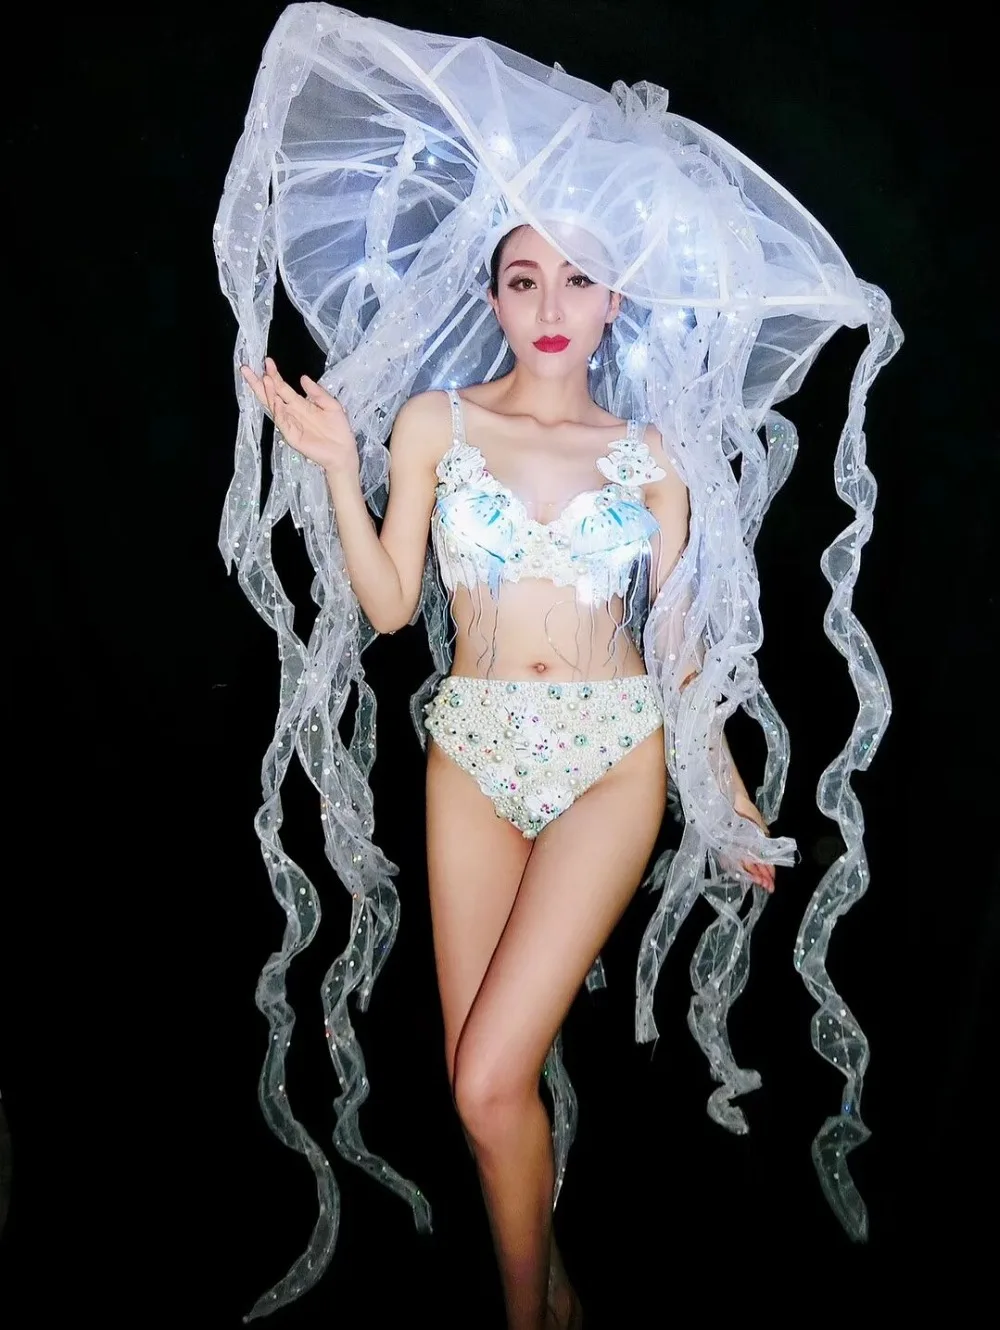 Сексуальное Белое жемчужное бикини женский костюм светодиодный бюстгальтер с кристаллами шляпа ночной клуб бар сценический наряд модель Подиум DJ представление танцевальная одежда